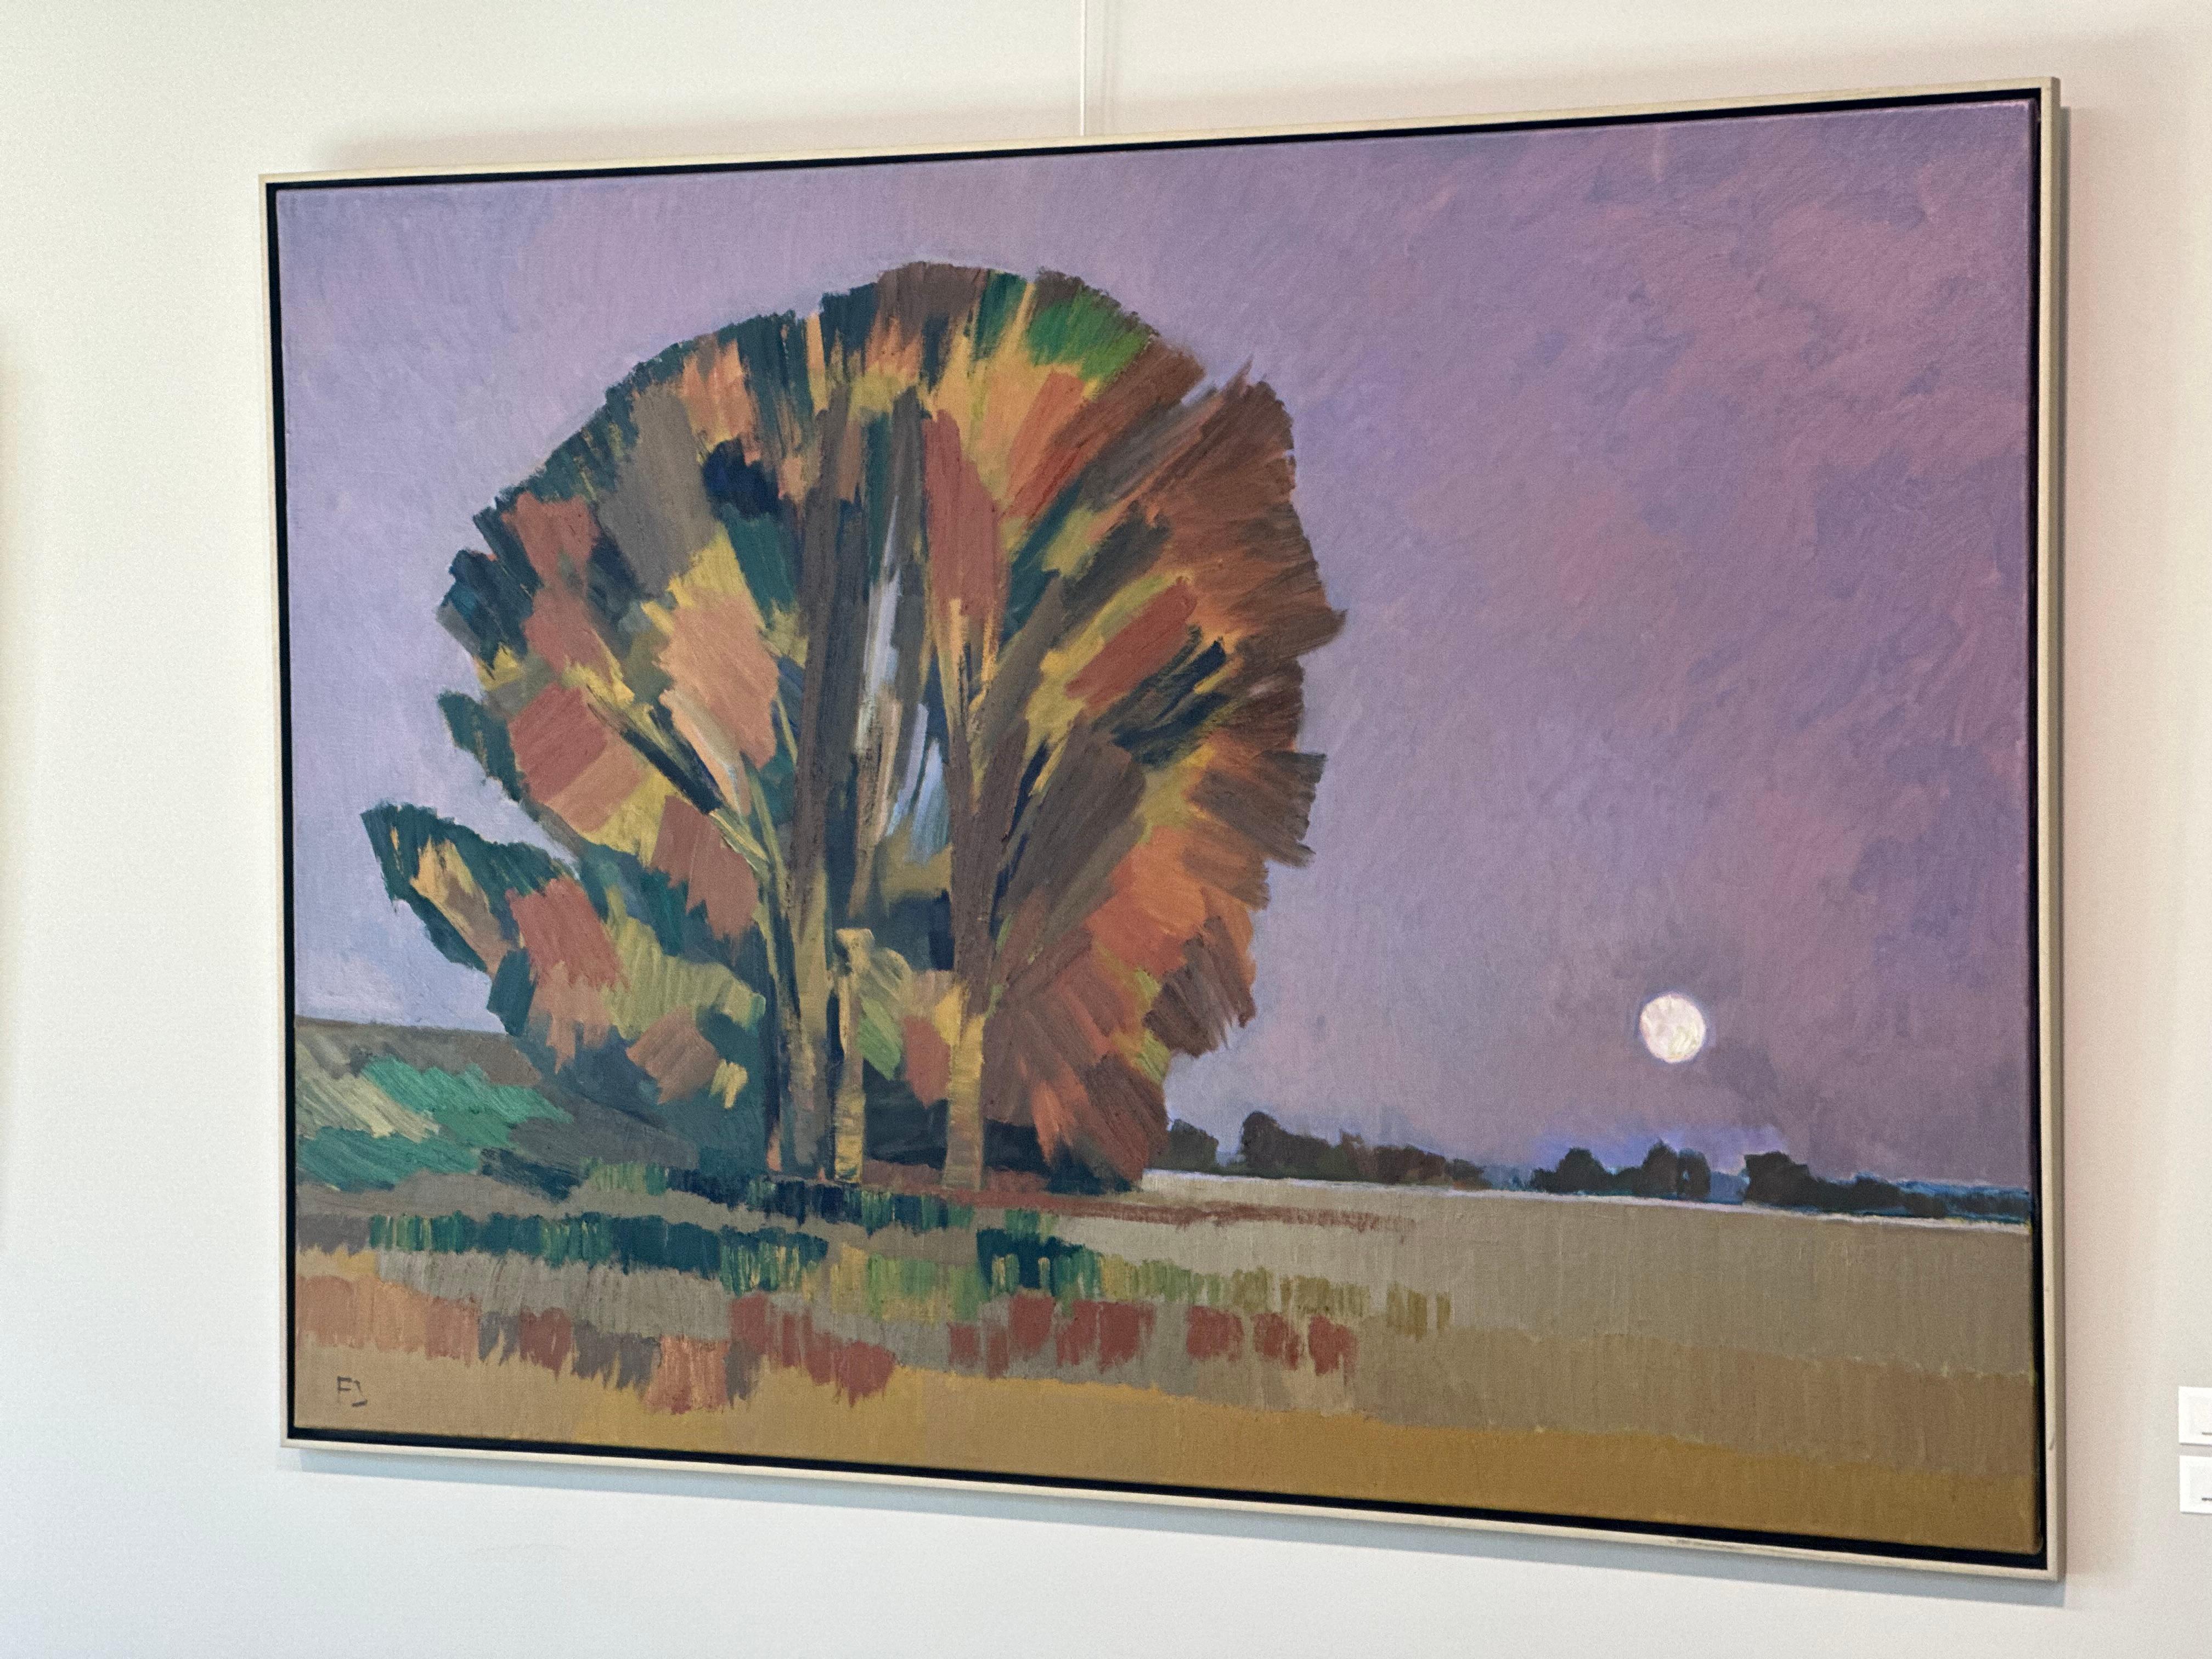 Clair de lune - 21e siècle Contemporain Modern Modernité Peinture de paysage impressionniste - Painting de Frank Dekkers